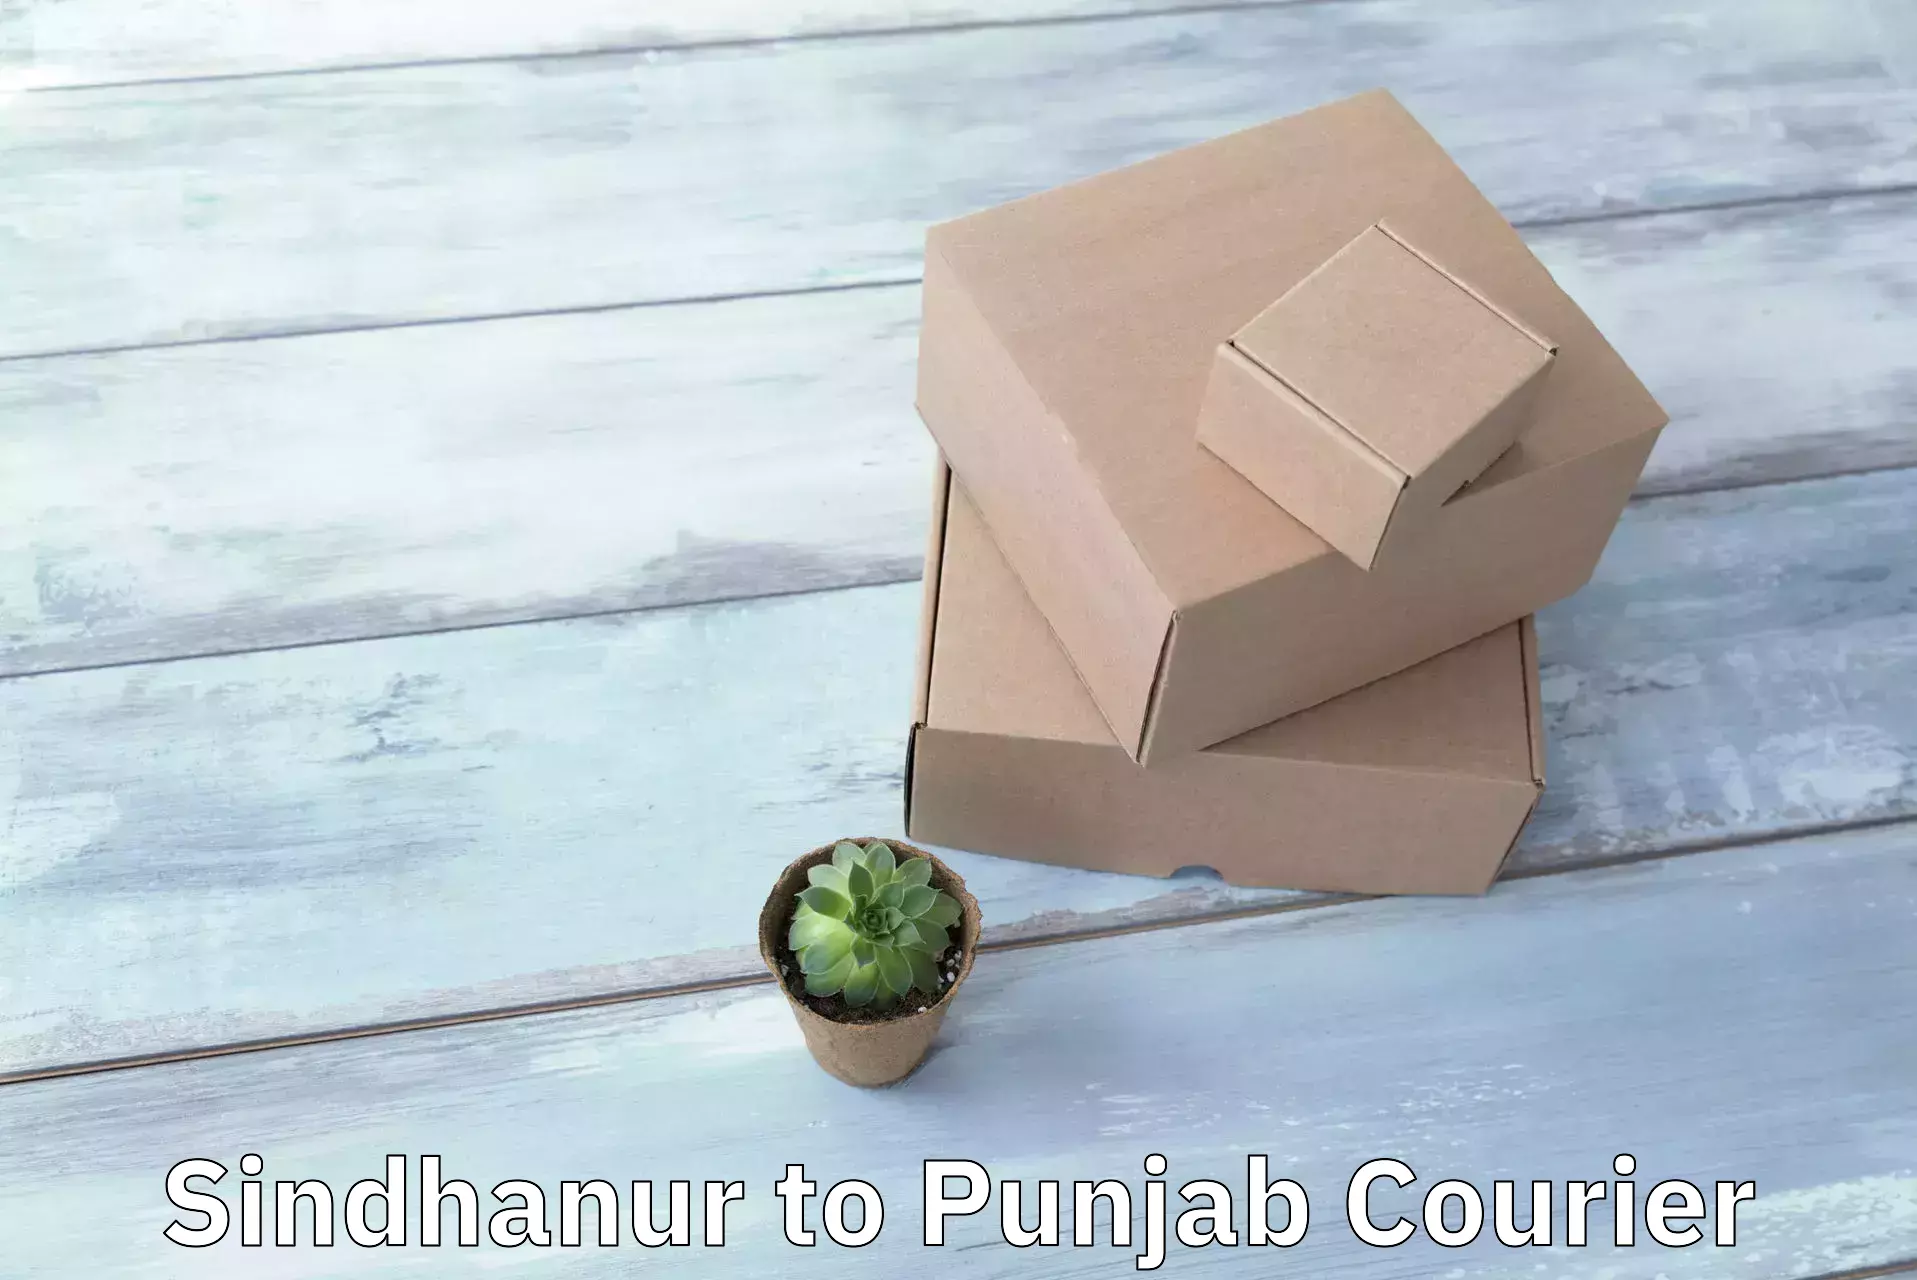 Urban courier service Sindhanur to Phillaur